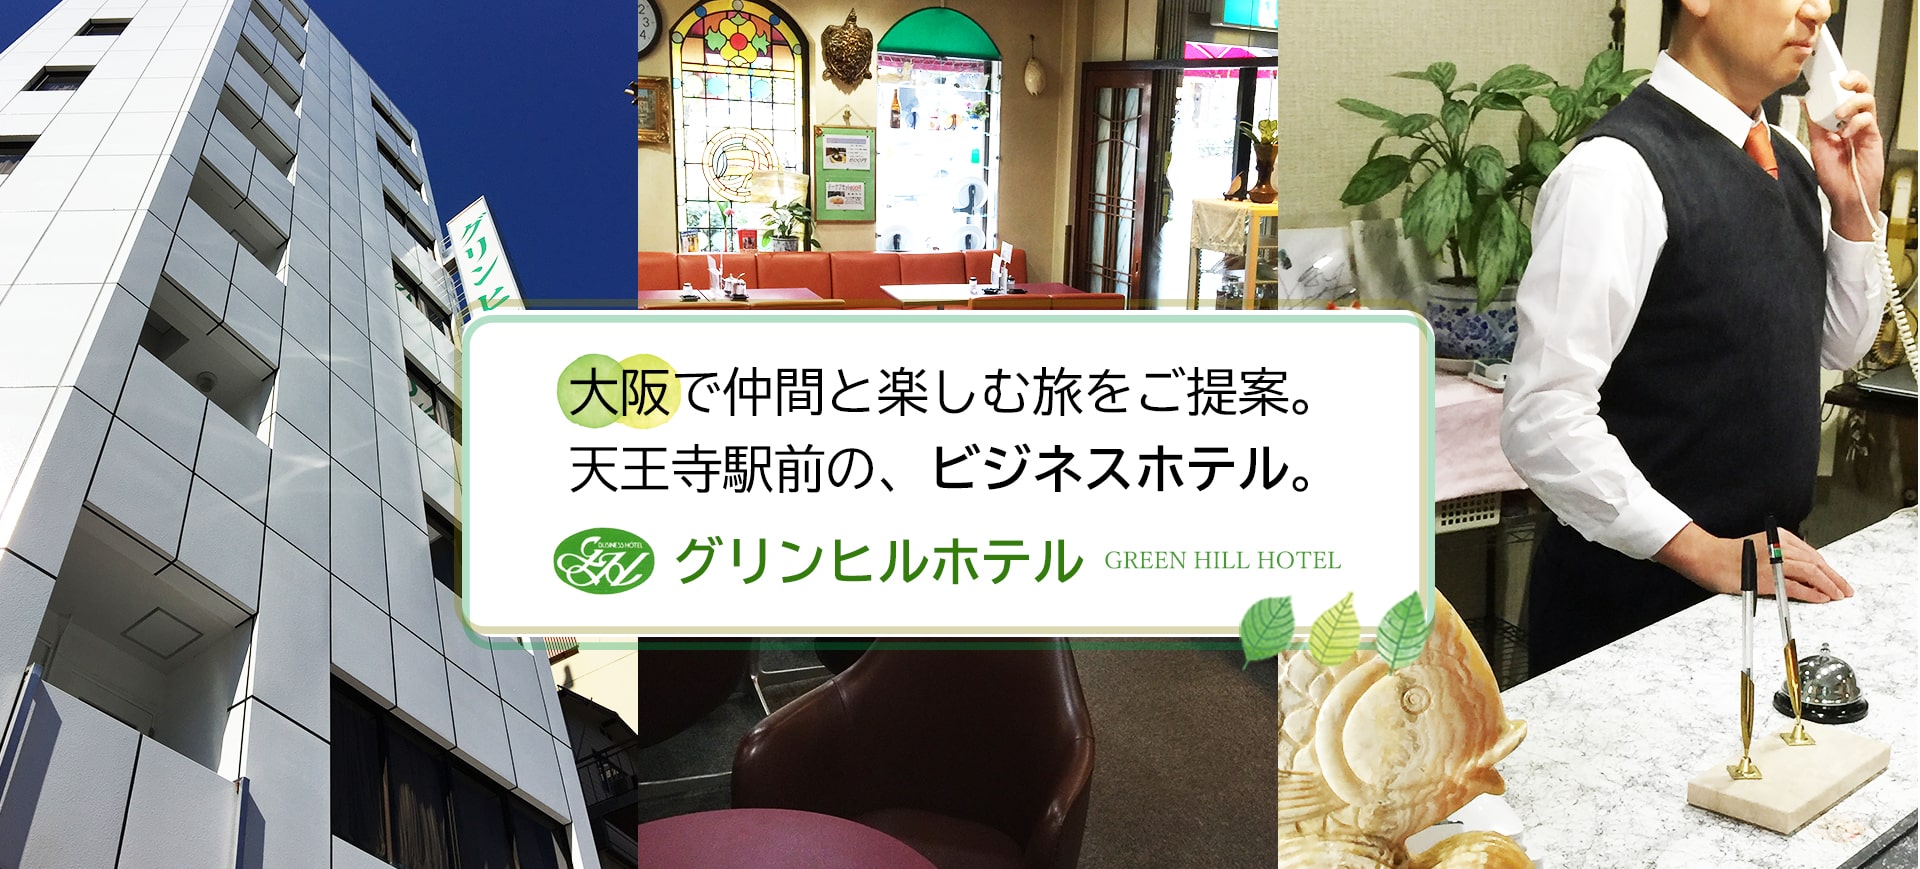 大阪で仲間と楽しむ旅をご提案。天王寺駅前の、ビジネスホテル。グリンヒルホテル